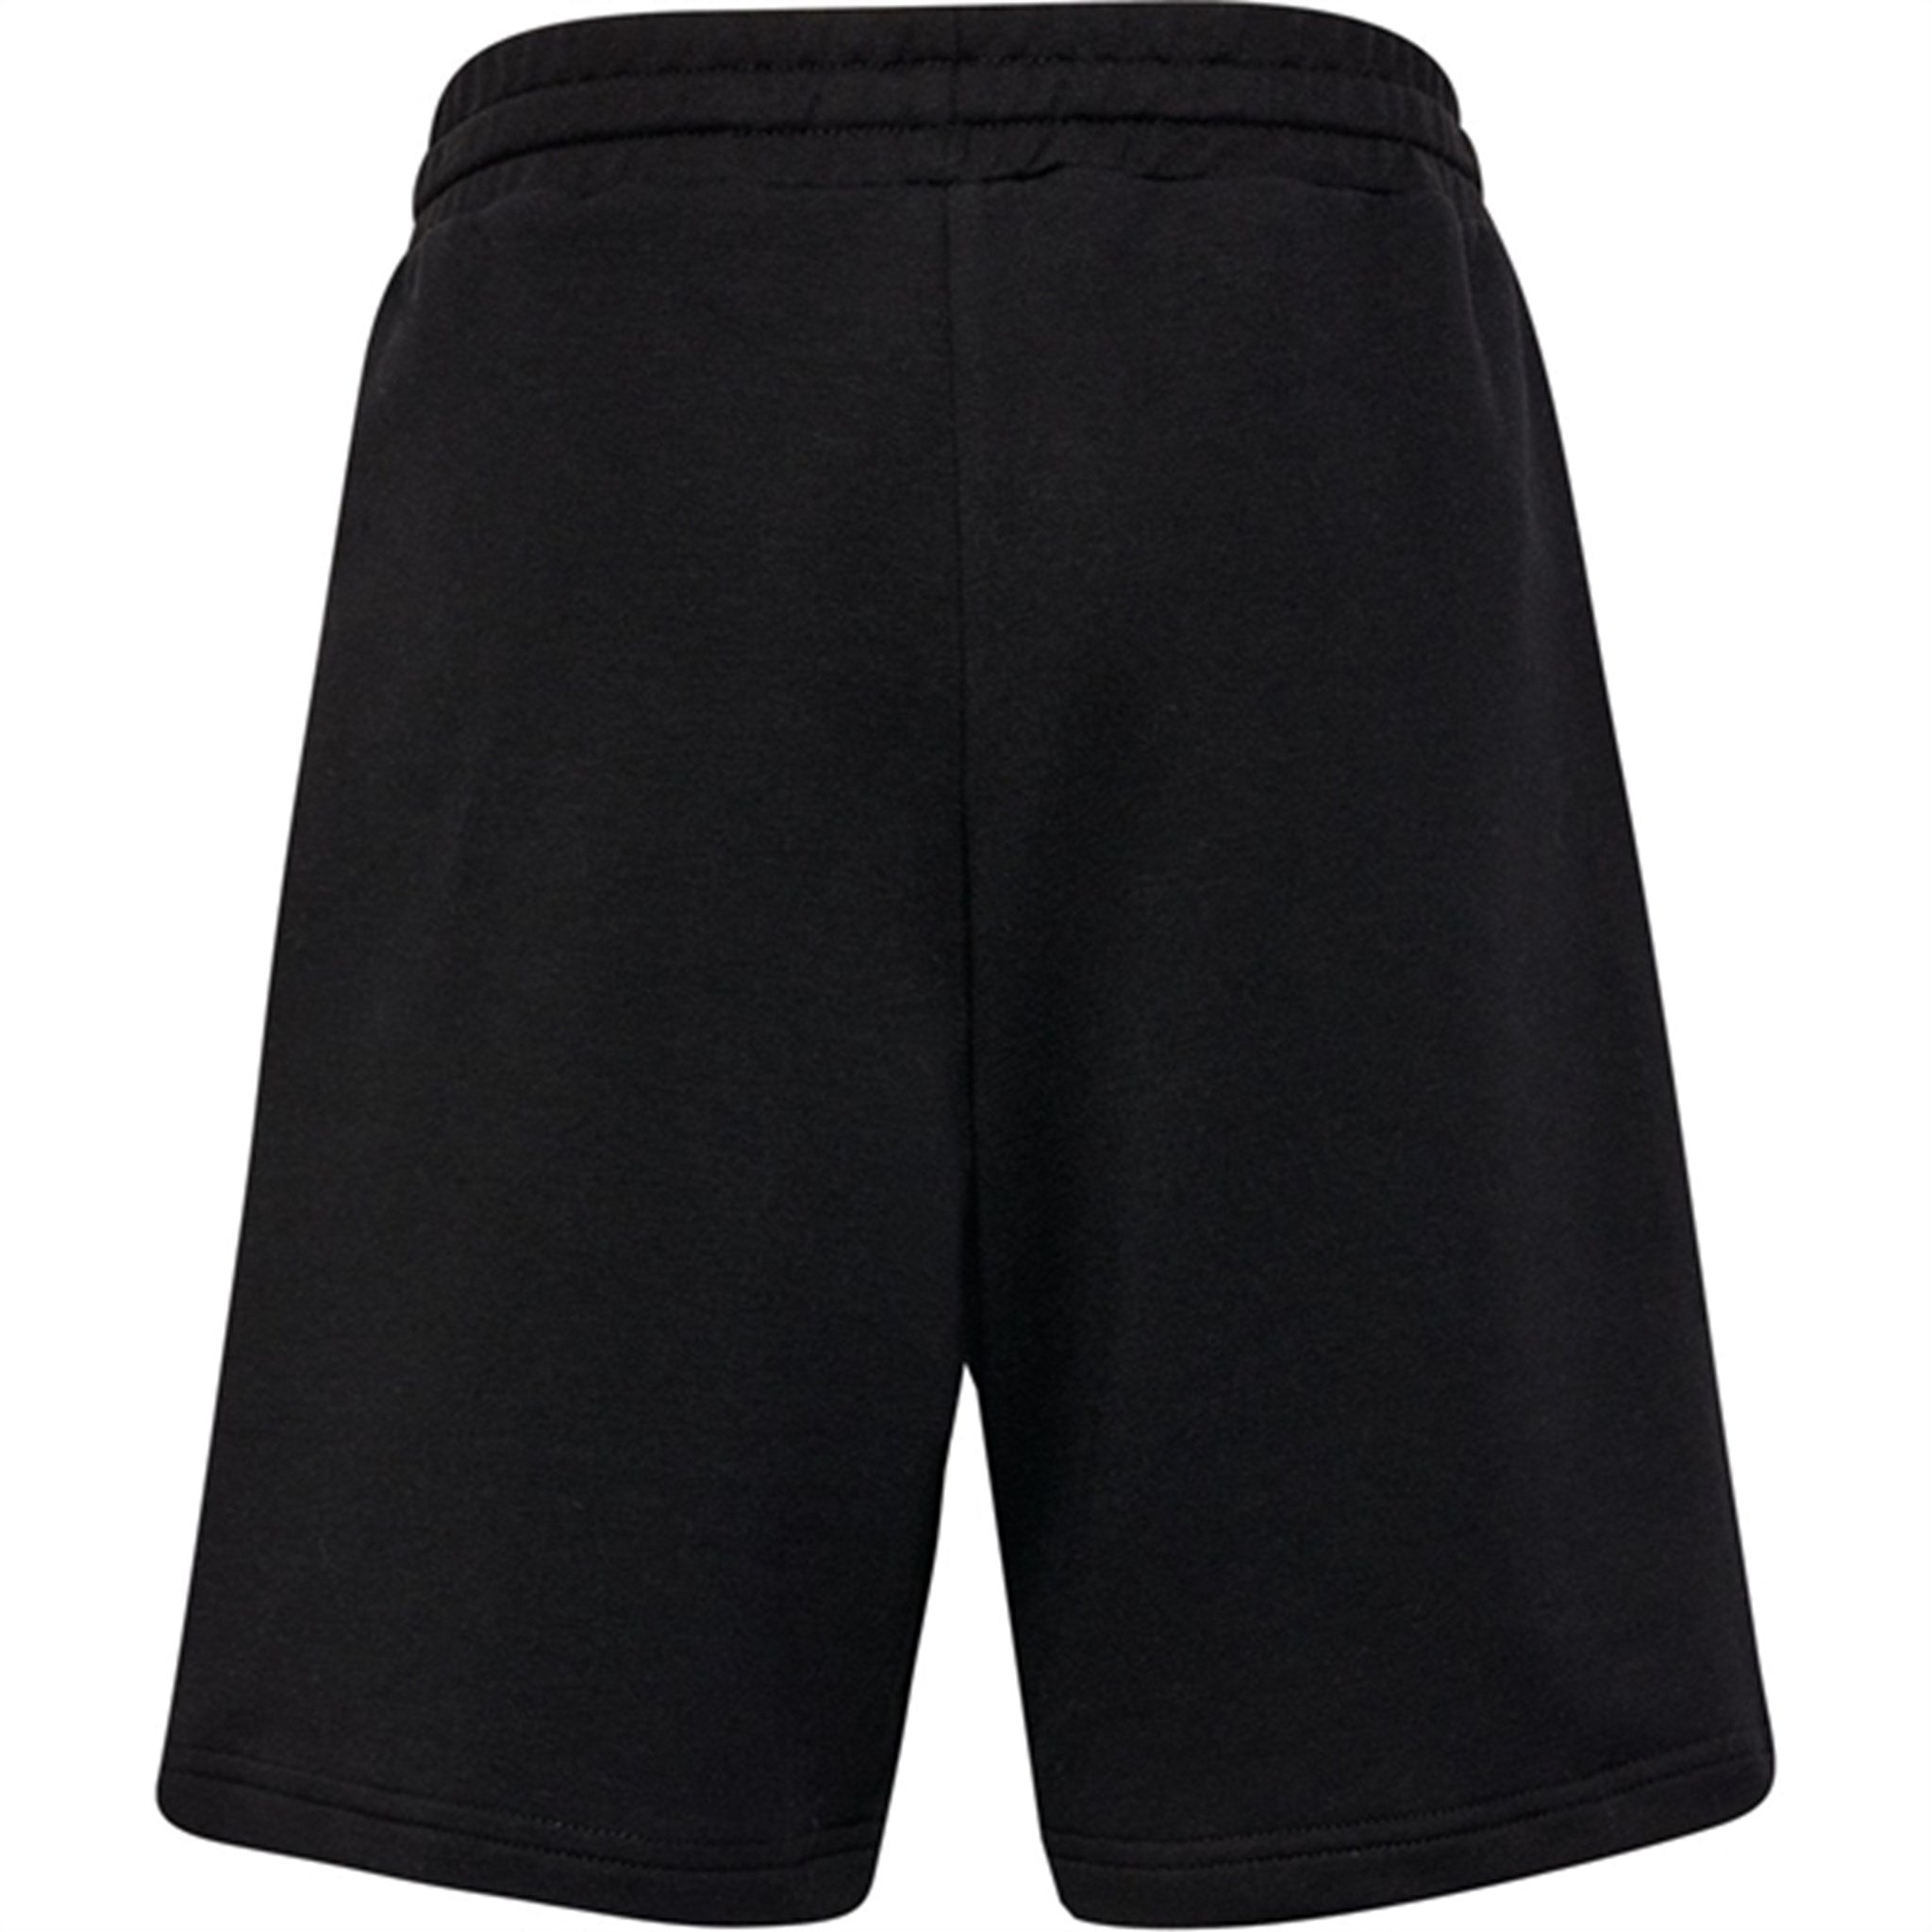 Hummel Black Owen Shorts 4